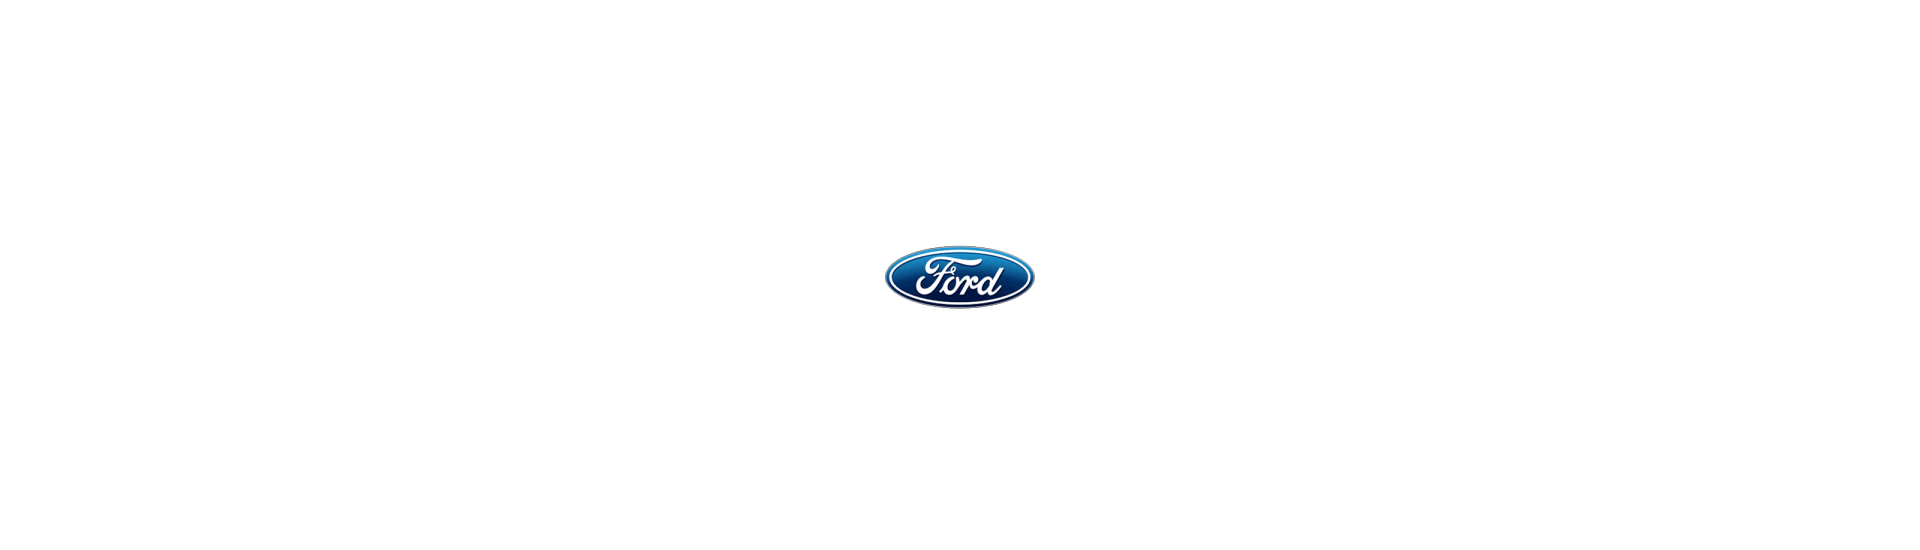 Cauti butoane de geamuri si blocuri de lumini pentru marca Ford?